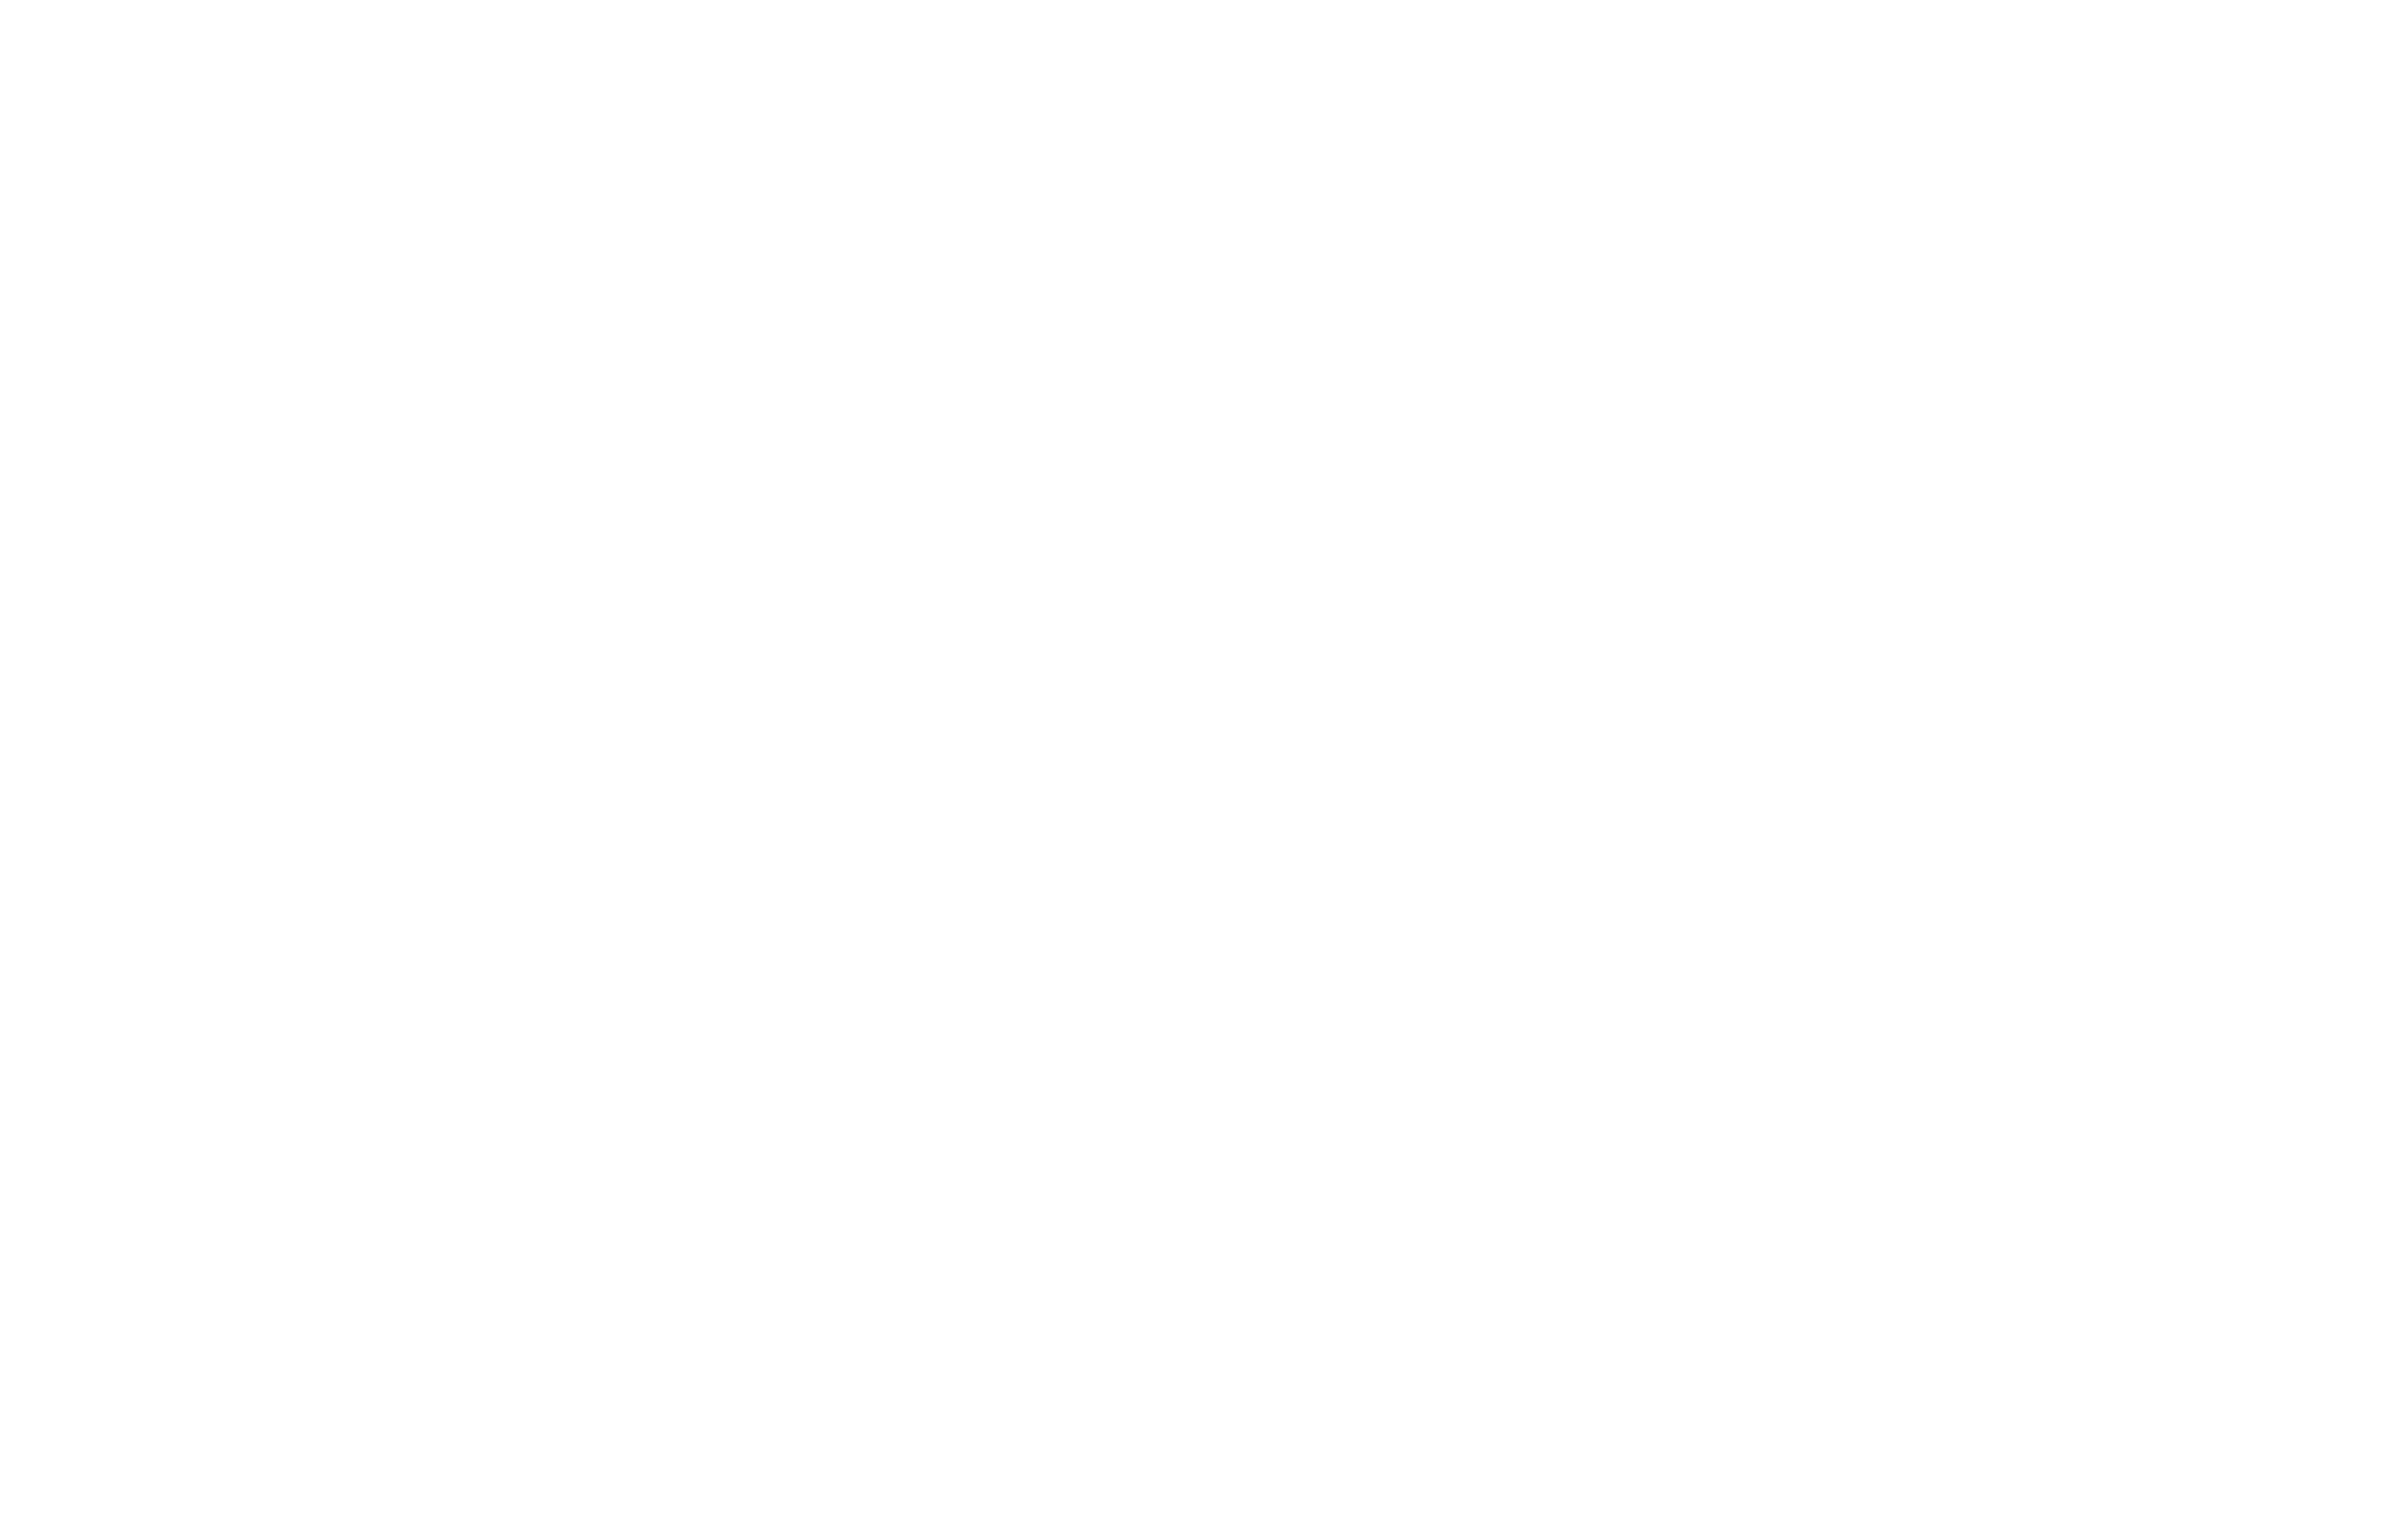 %luca.fruzza/visual.designerhp 2